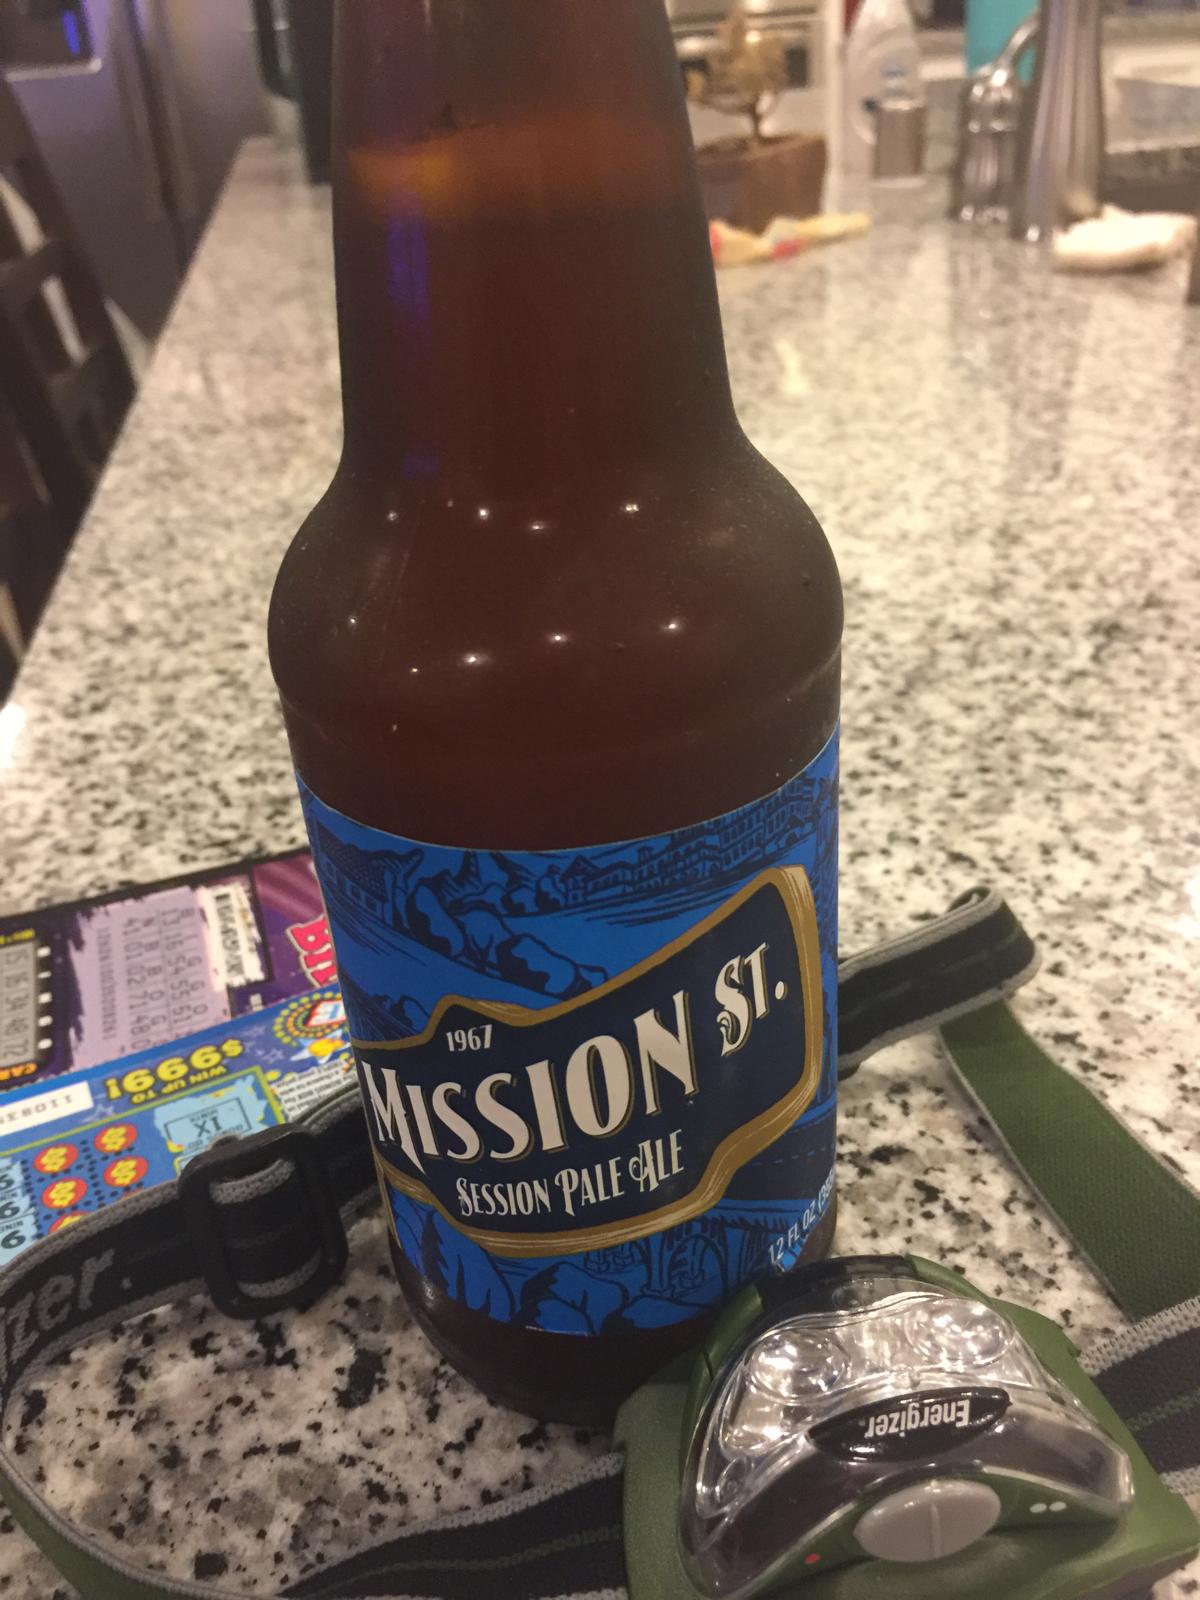 Mission St. Session Pale Ale